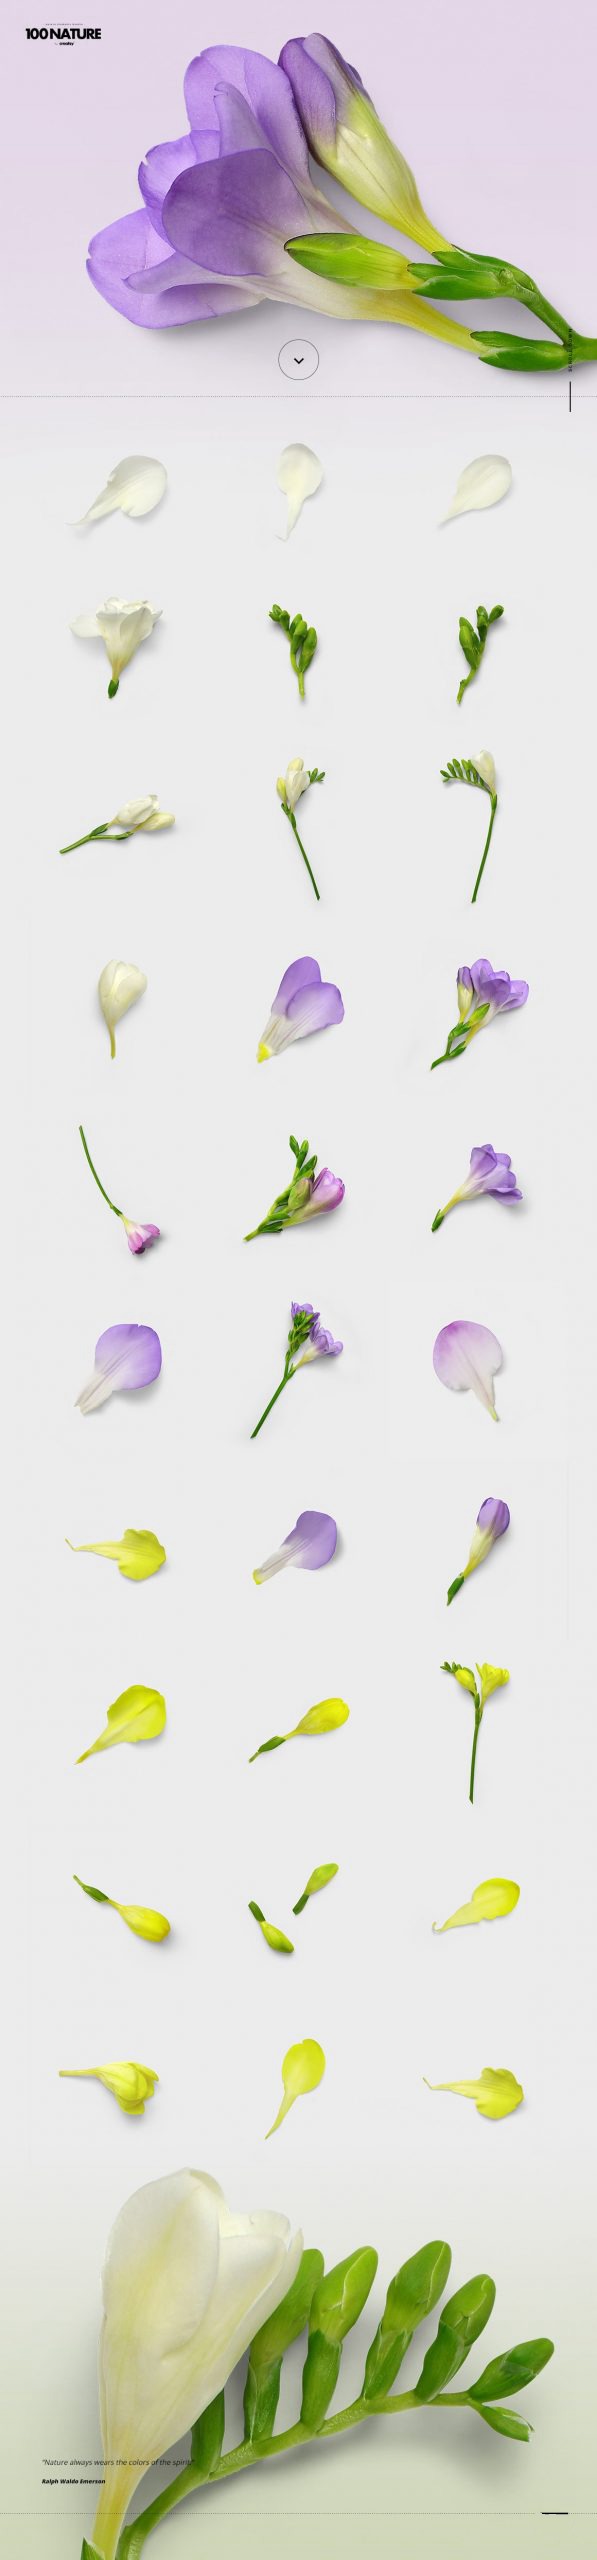 100款绿色花卉自然植物元素tif格式高质量图片素材套装 图片素材 第5张